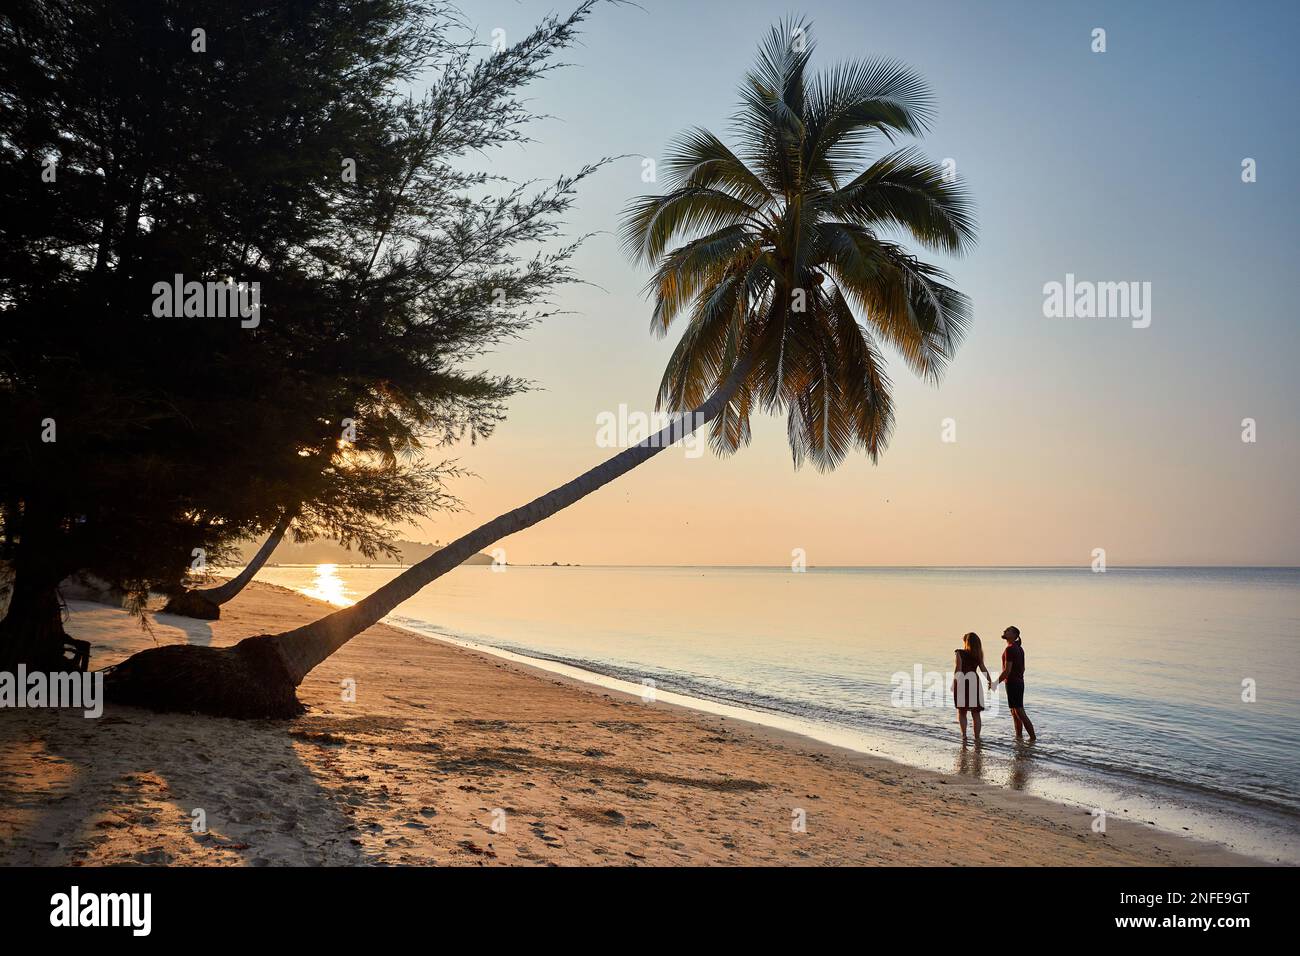 Glückliches Paar in Silhouette am tropischen Strand in der Nähe von Palmen der Phi Phi Insel im Süden Thailands. Reisemagazin Urlaubskonzept. Stockfoto